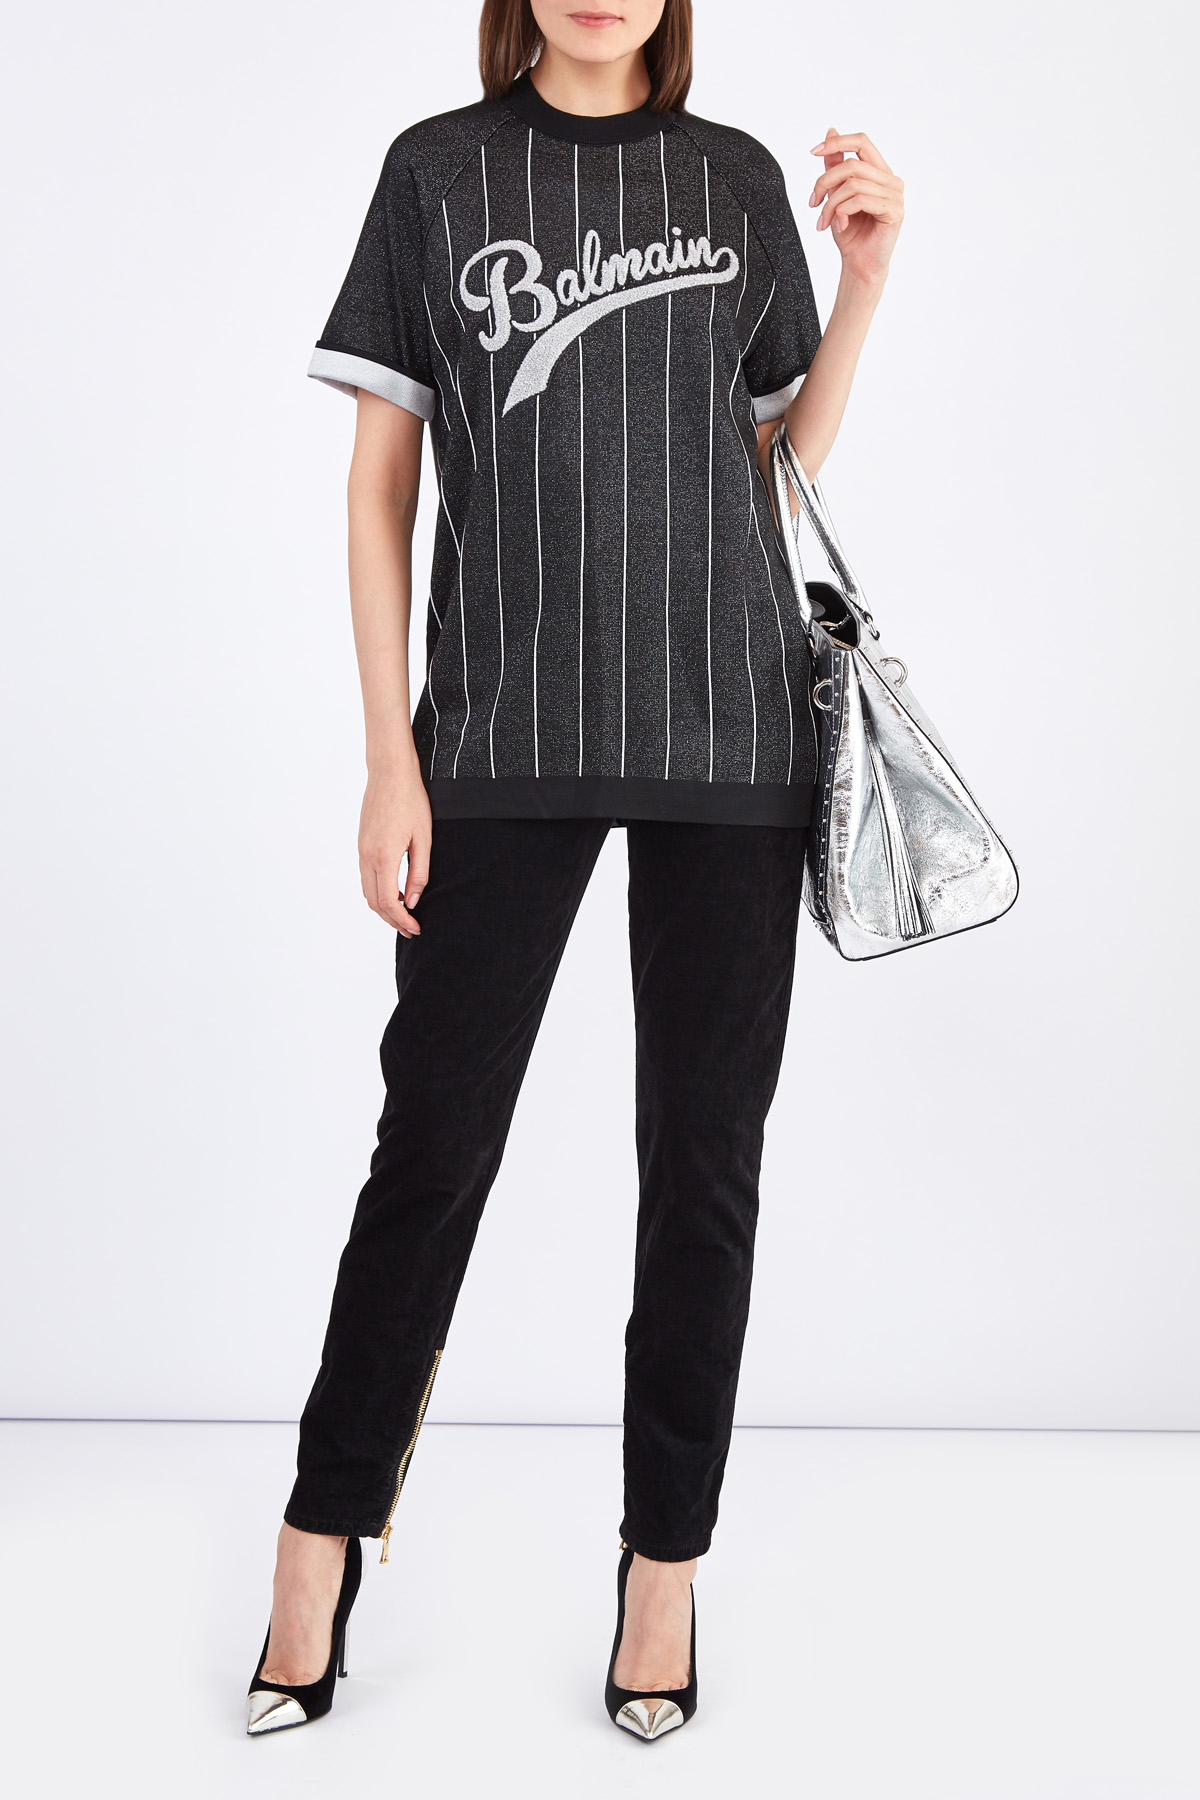 Oversize-джемпер с коротким рукавом с отделкой в спортивном стиле BALMAIN, цвет черный, размер 36;34 - фото 2